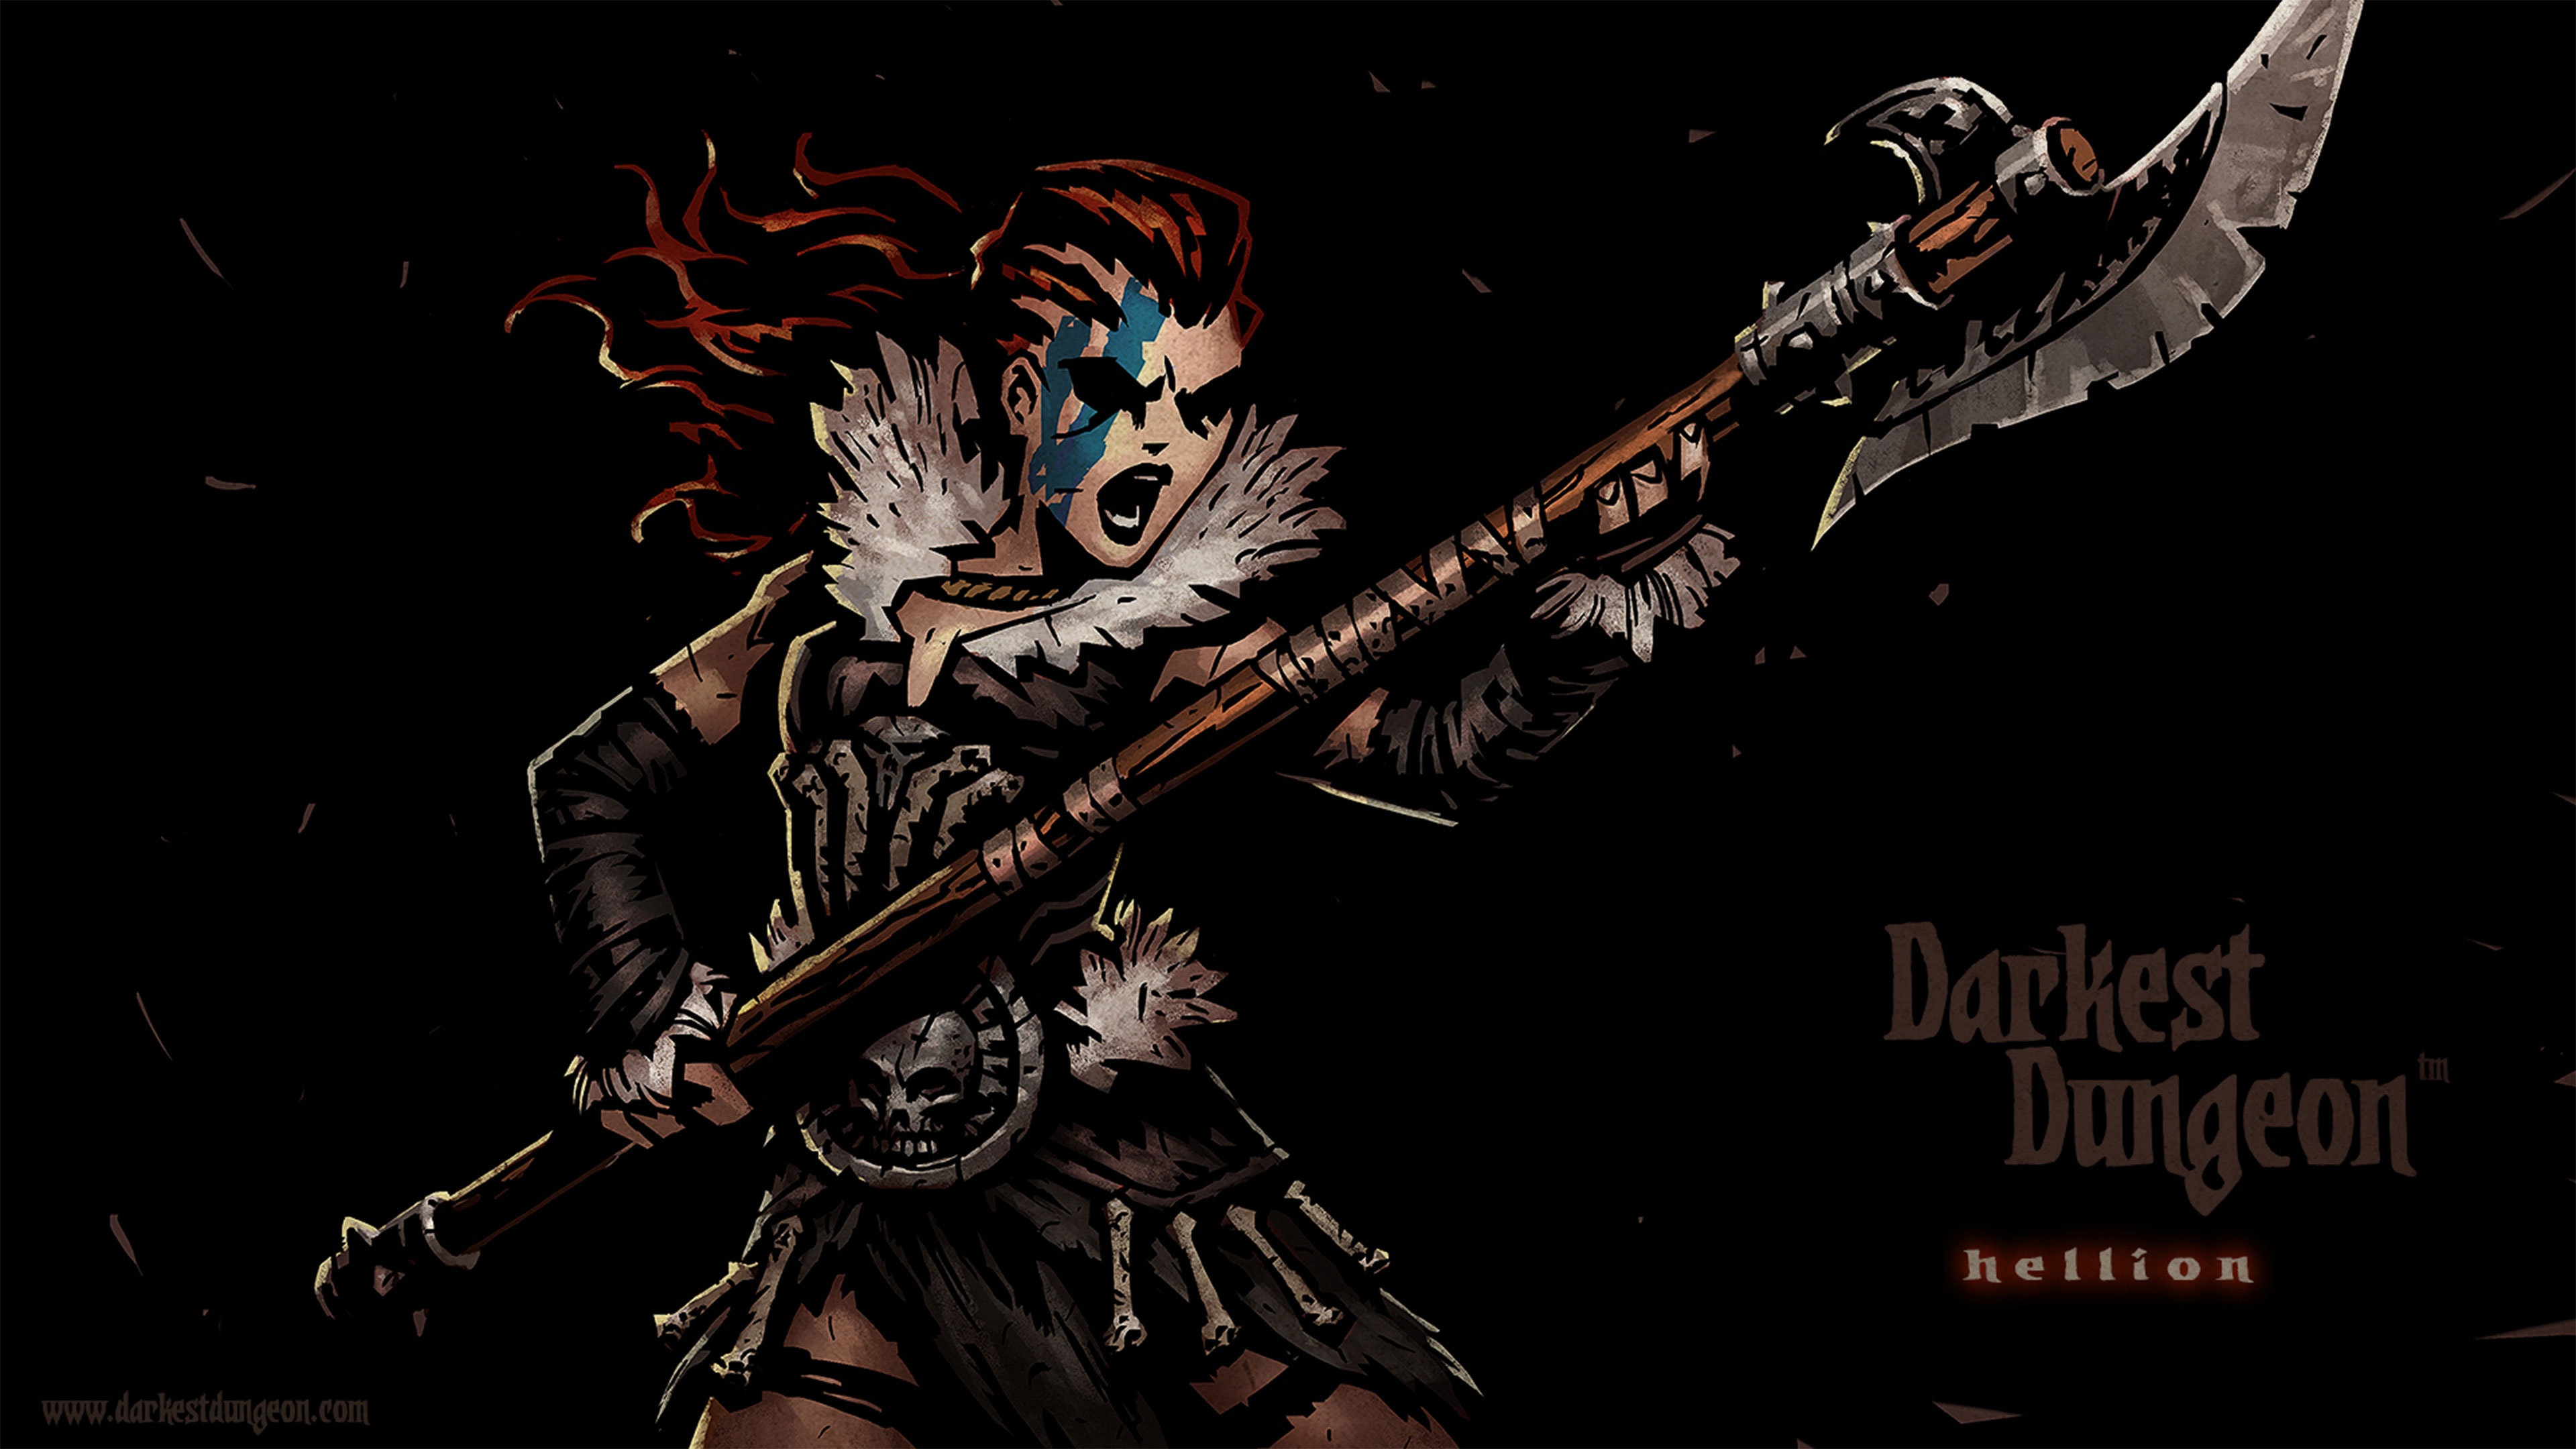 Darkest Dungeon Hellion , HD Wallpaper & Backgrounds